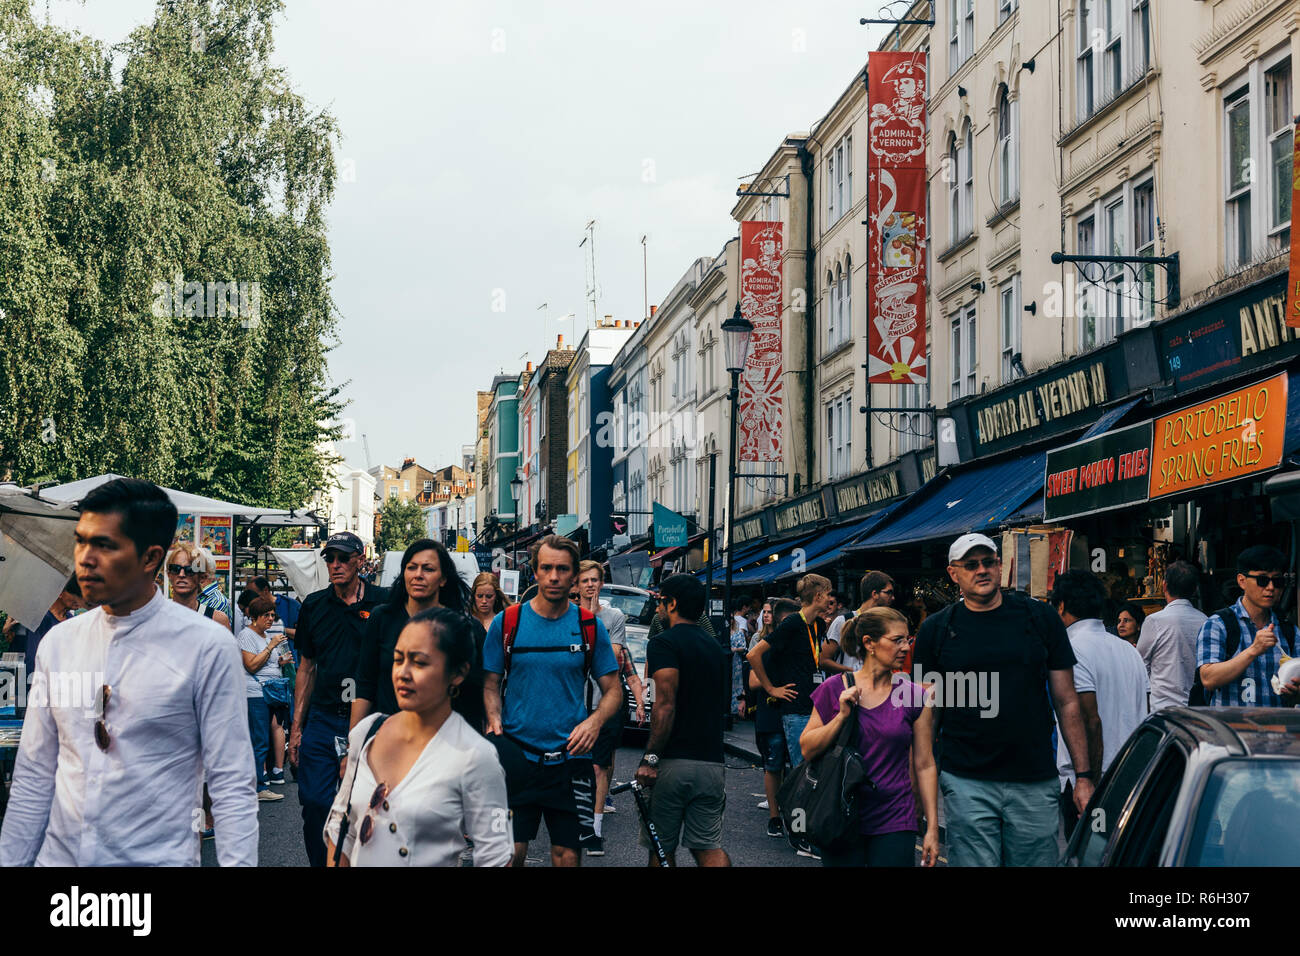 Londres/UK - 21 juillet 2018 : Les gens qui marchent sur le marché de Portobello, un des notables de London street, connue pour ses marchés des vêtements de seconde main et d'antiquités Banque D'Images